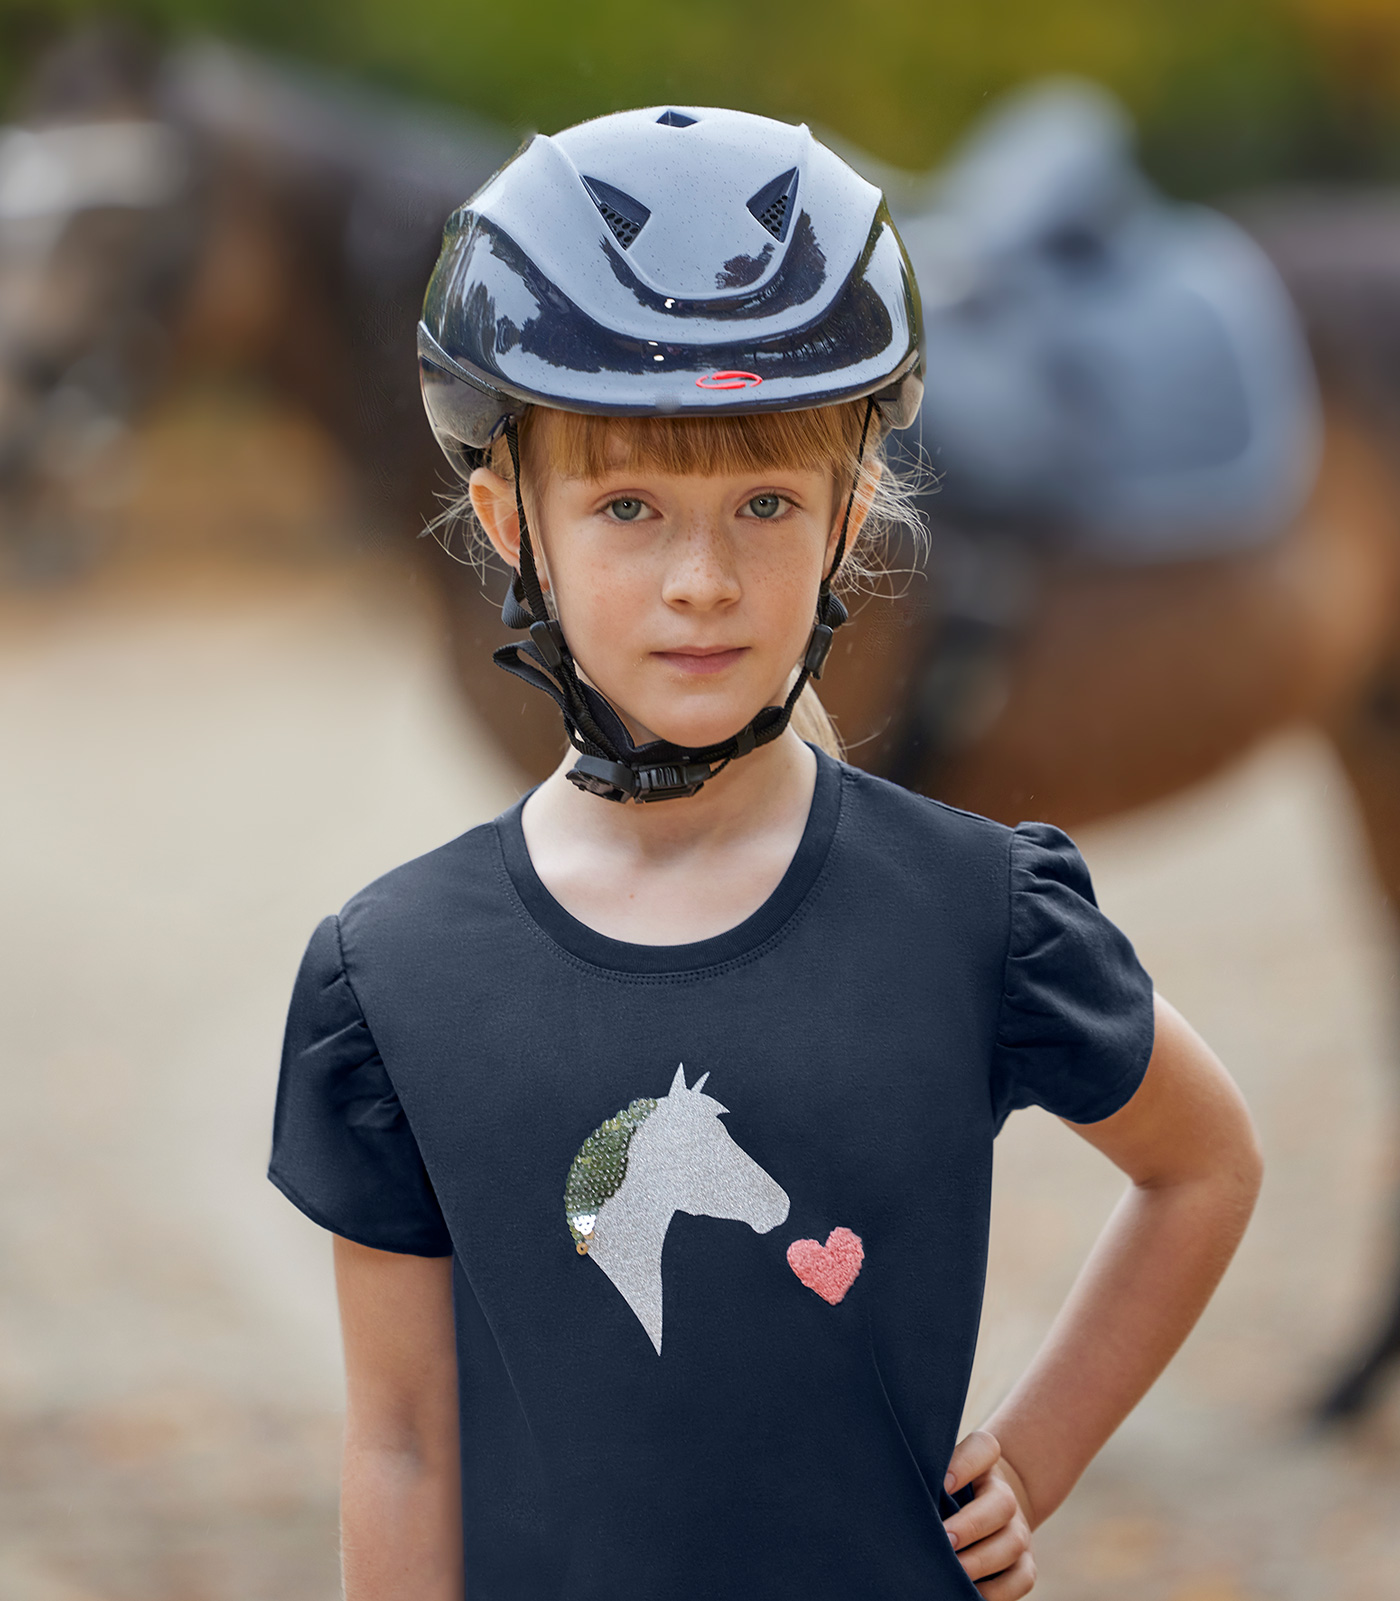 SWING K4 Lucky Riding Helmet for Children